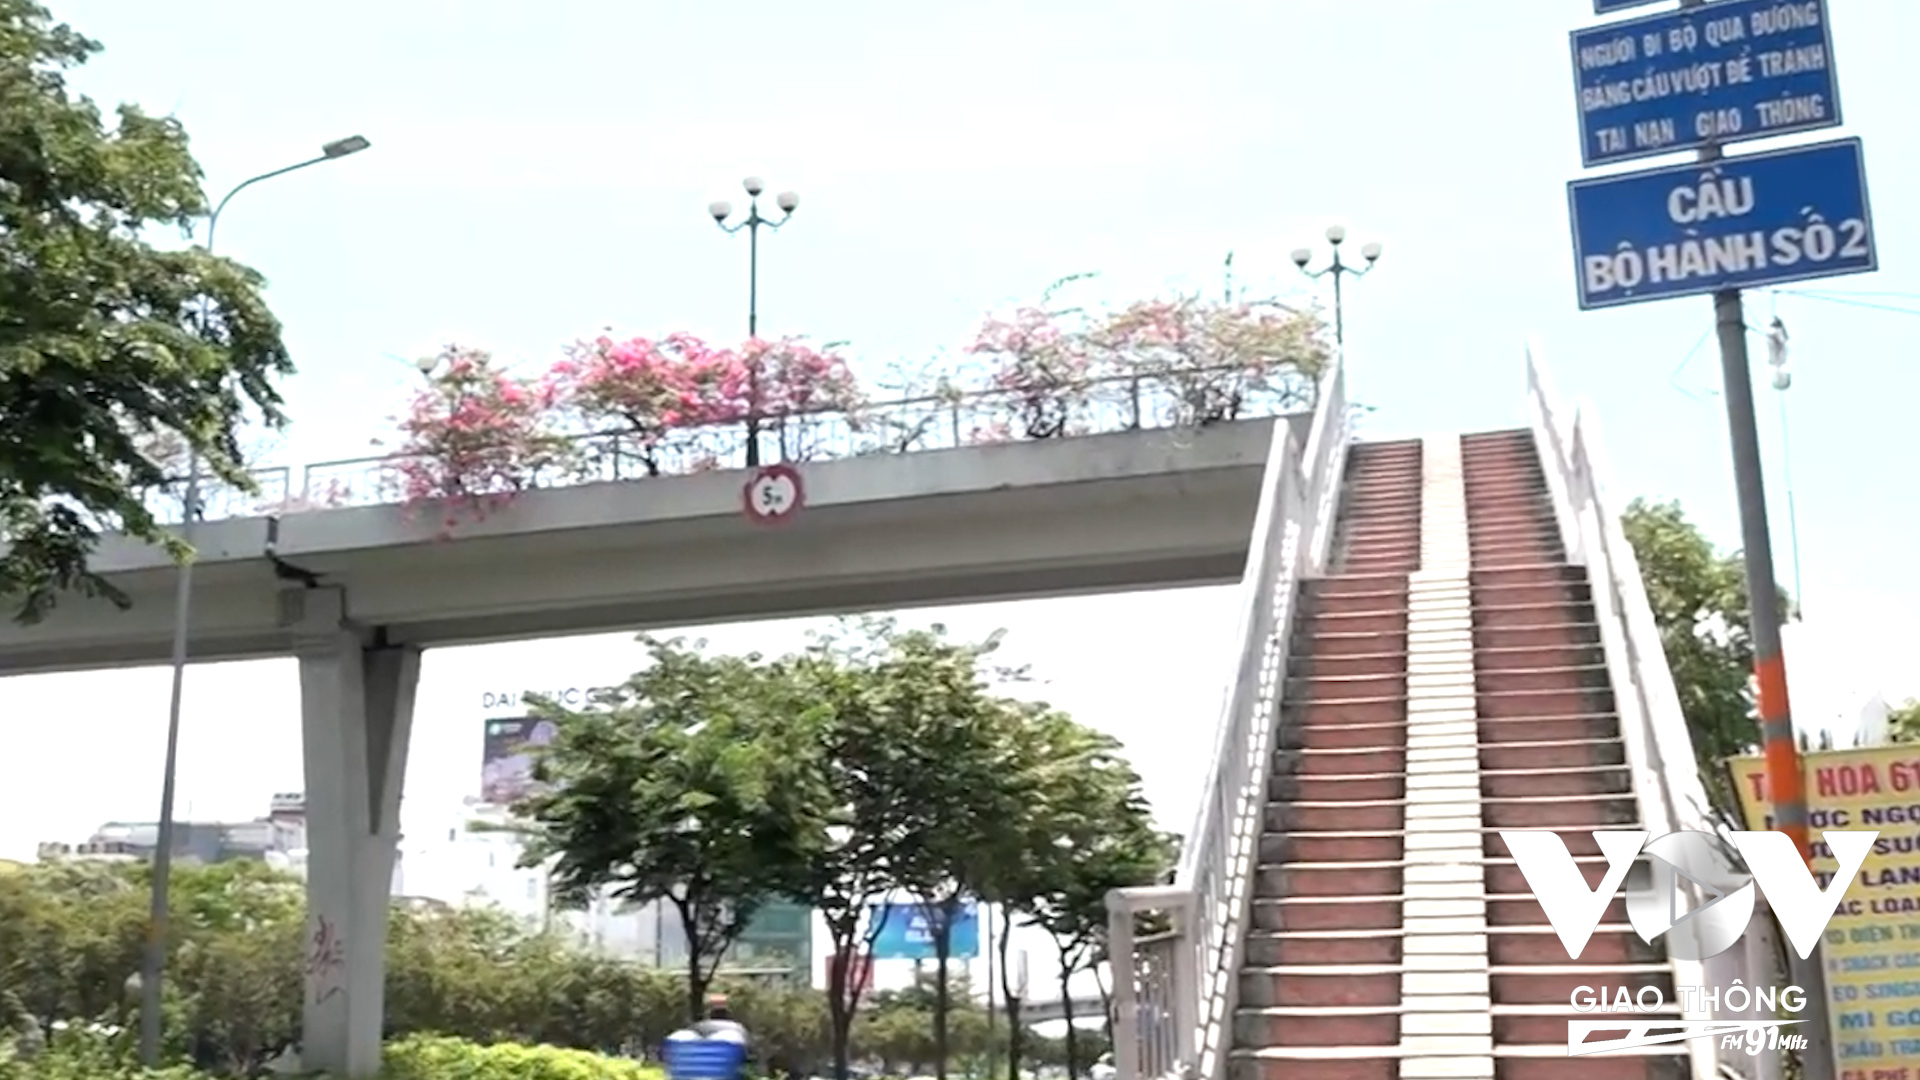 Cầu bộ hành - một trong những công trình hướng tới người đi bộ nhưng giữa thời tiết nắng nóng, nhiều người chọn băng qua đường thay vì đi vòng